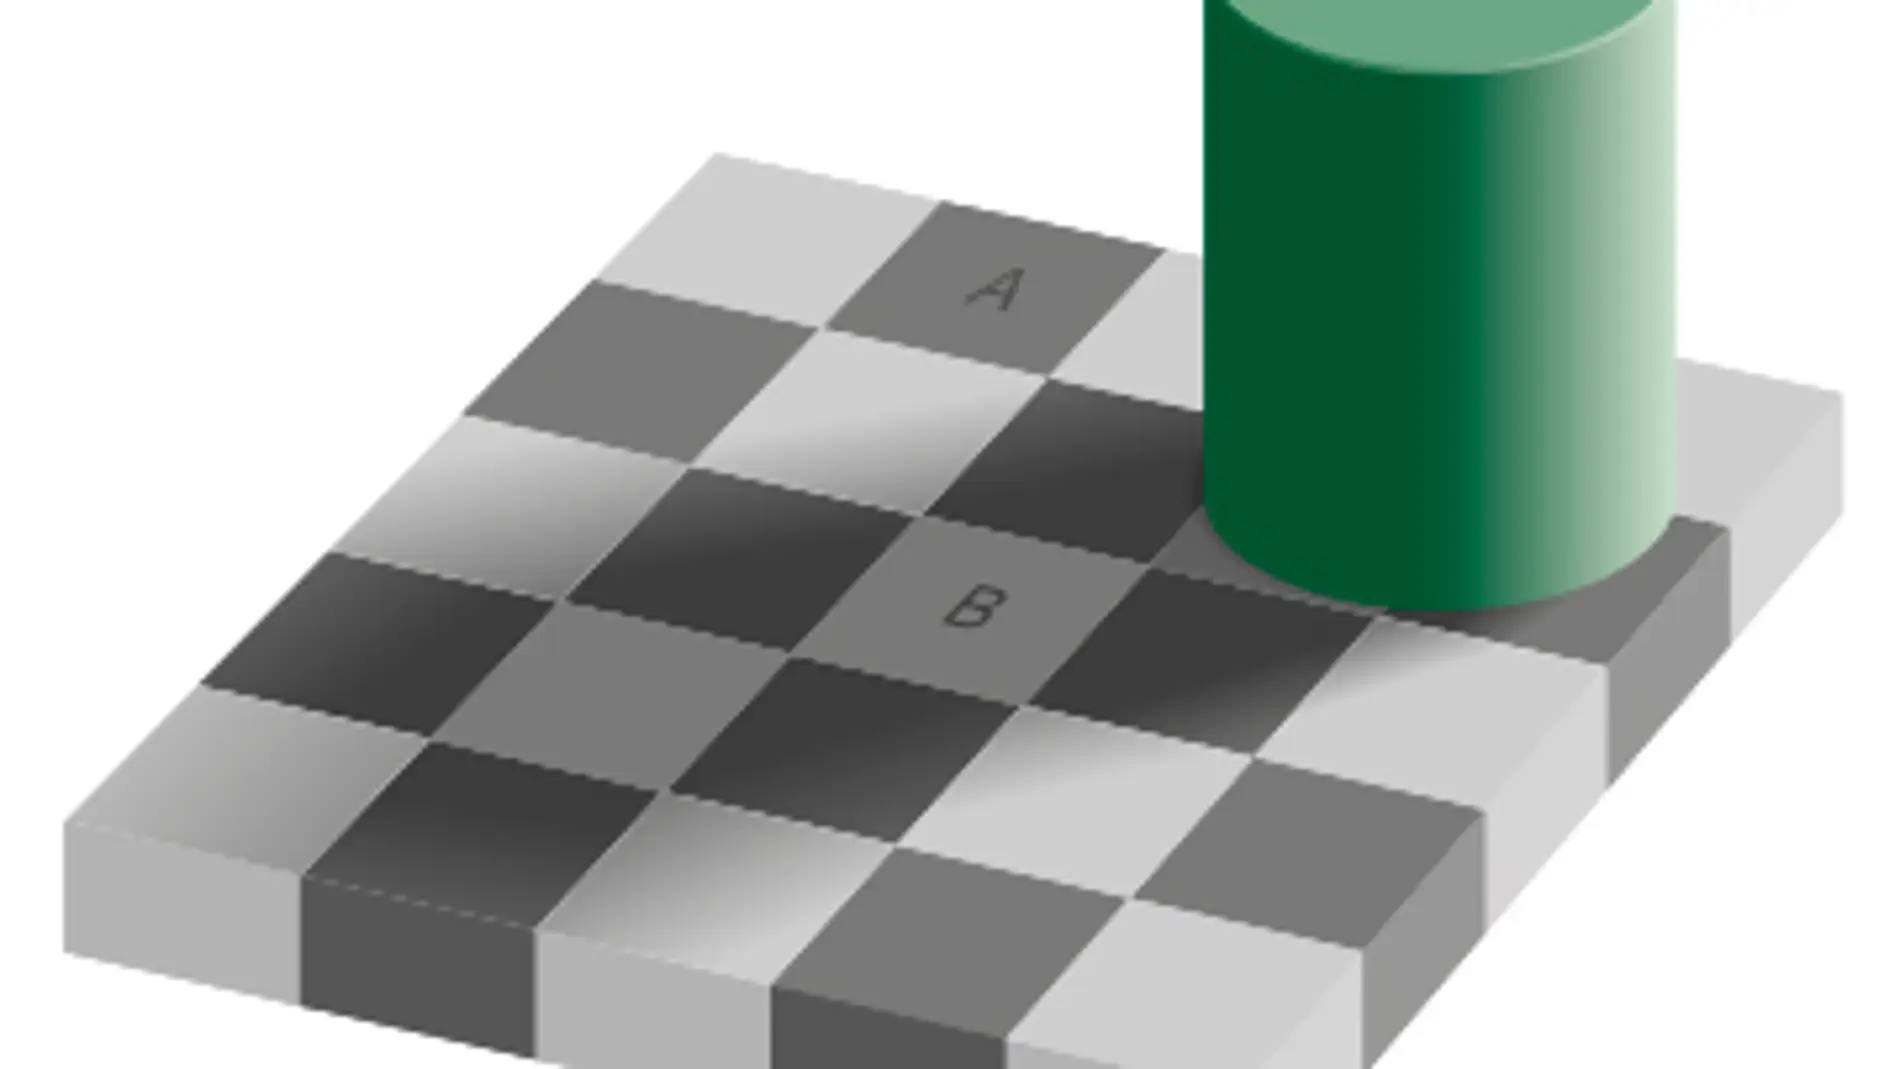 Ilusión óptica del tablero de ajedrez